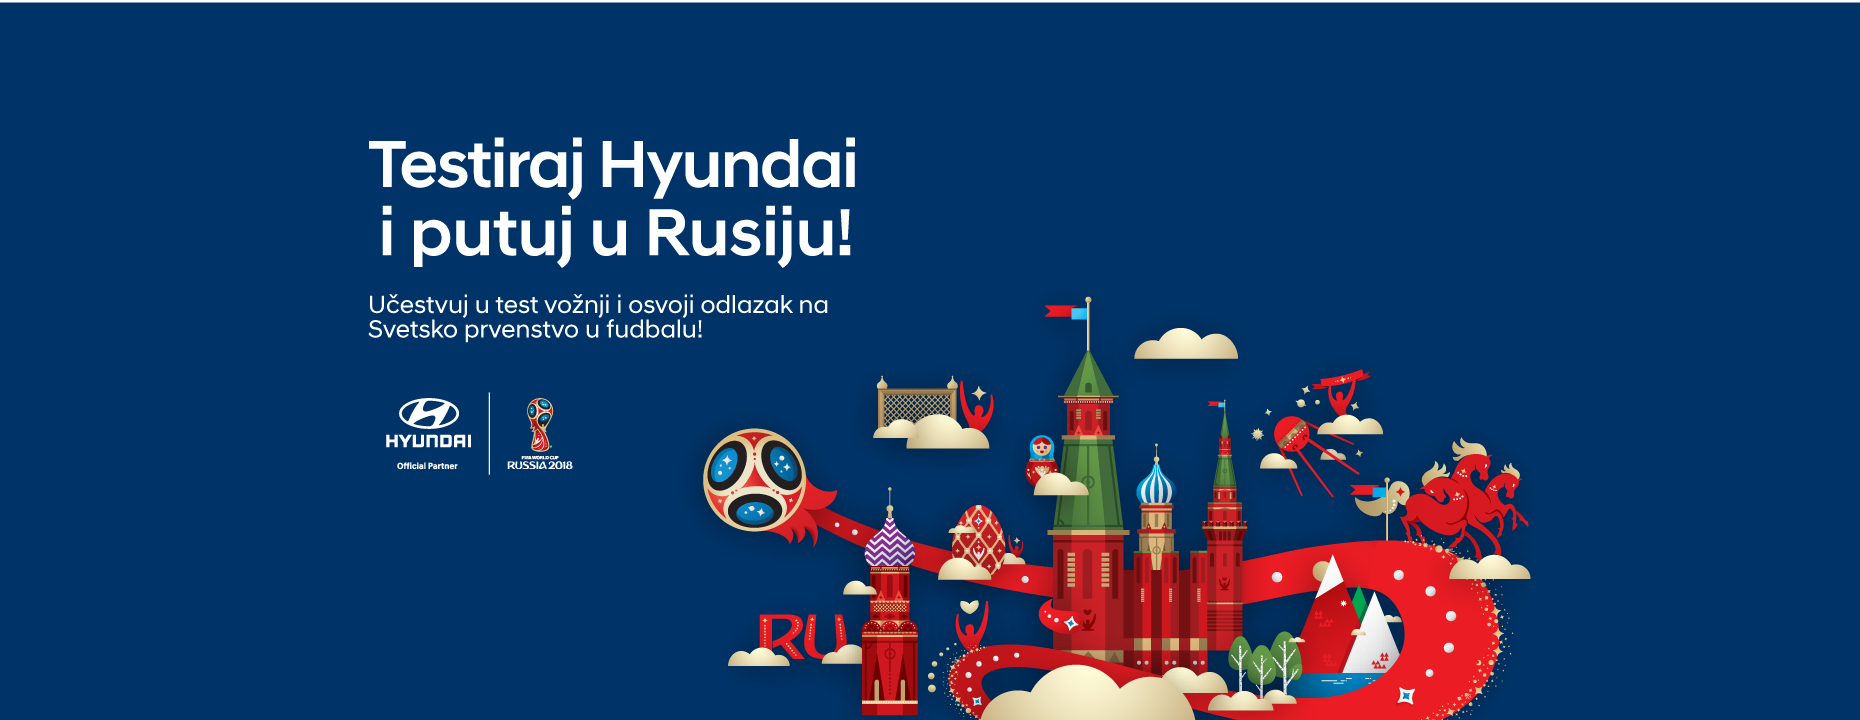 Testiraj Hyundai vozila i osvoji odlazak na  svetsko prvenstvo u fudbalu!